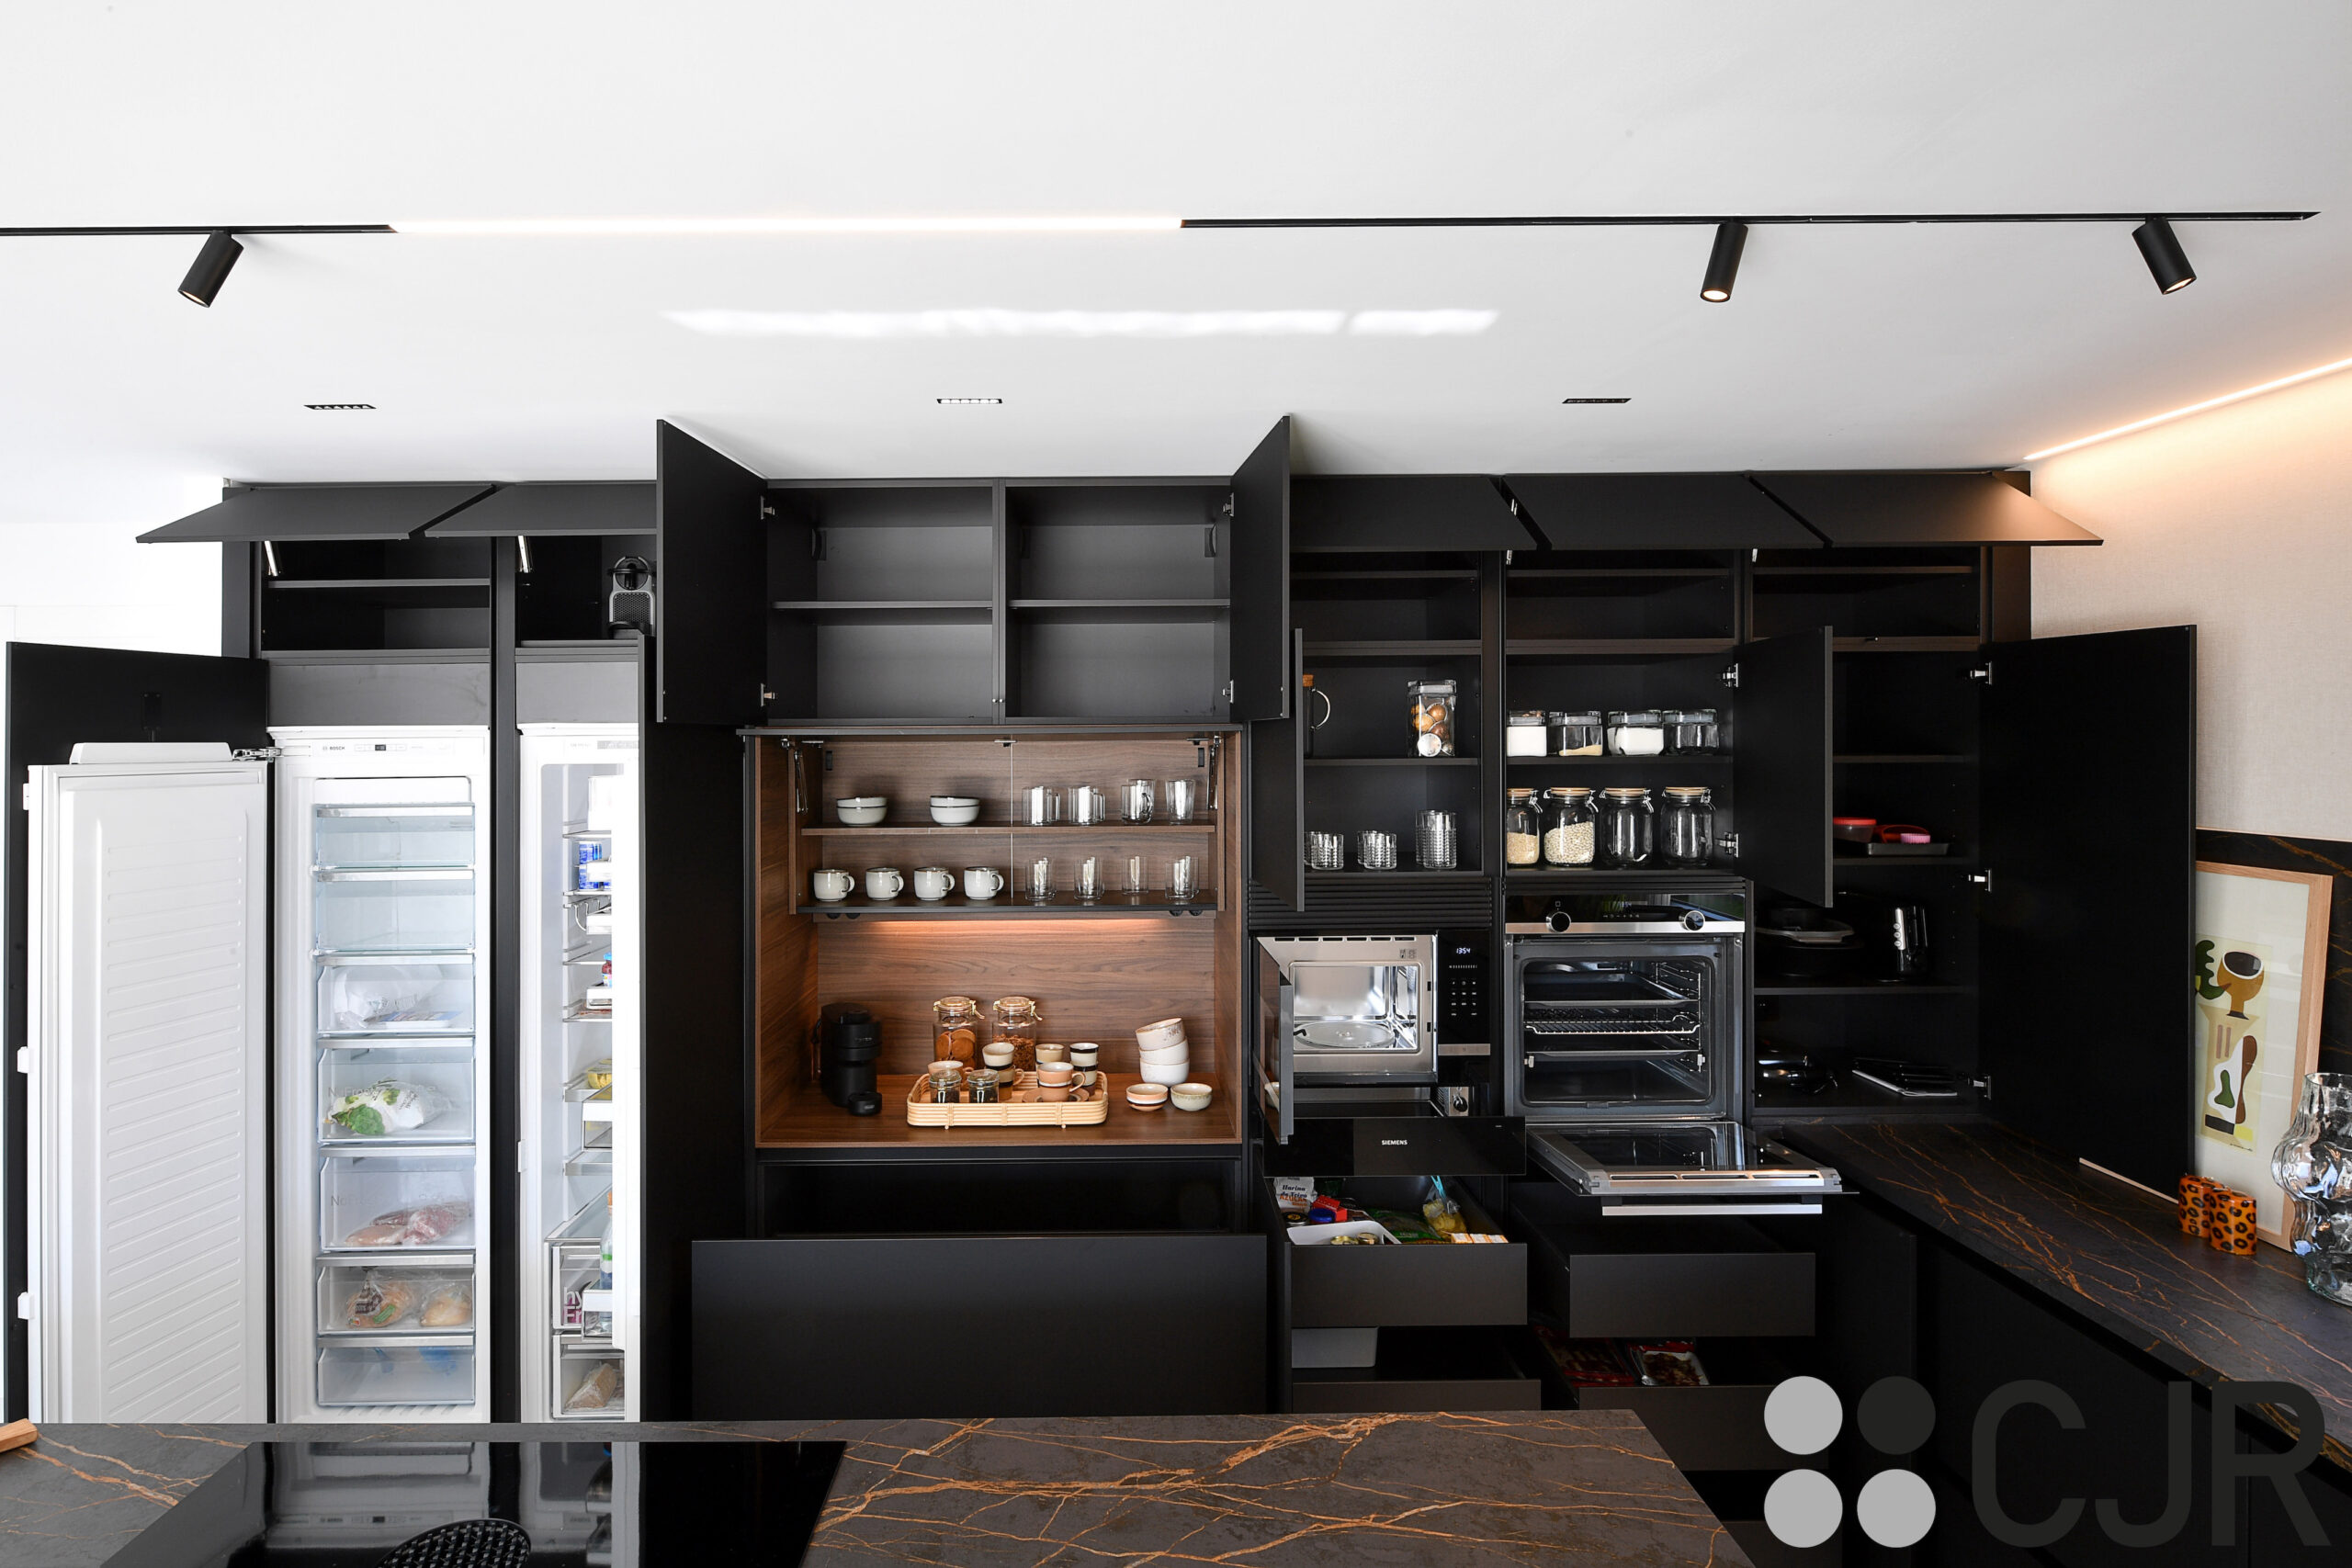 torres de cocina en negro mate con los electrodomesticos integrados cocinas cjr